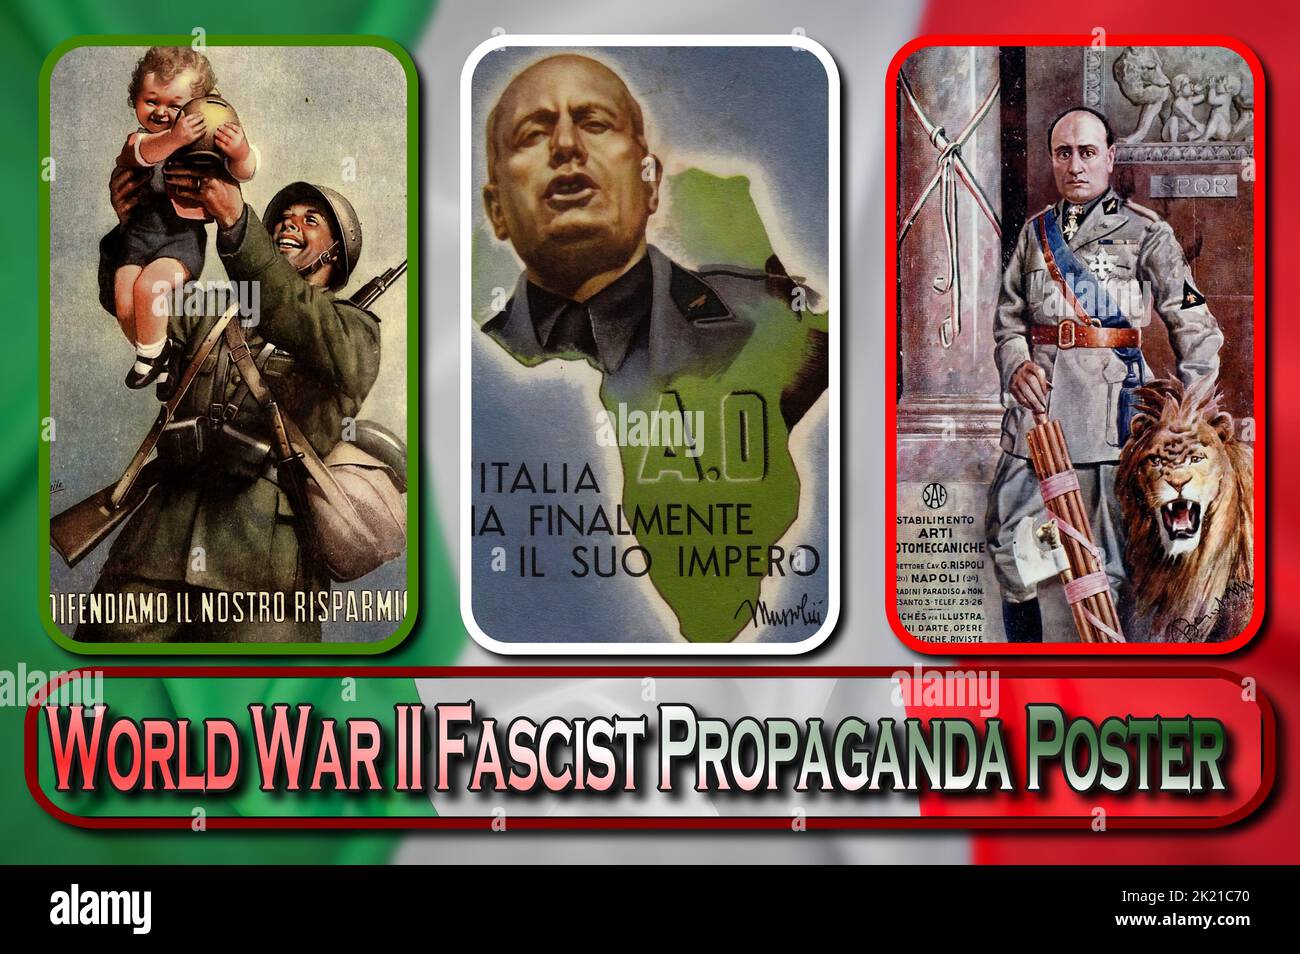 Affiches de propagande de l'Italie fasciste, pendant la Seconde Guerre mondiale Banque D'Images